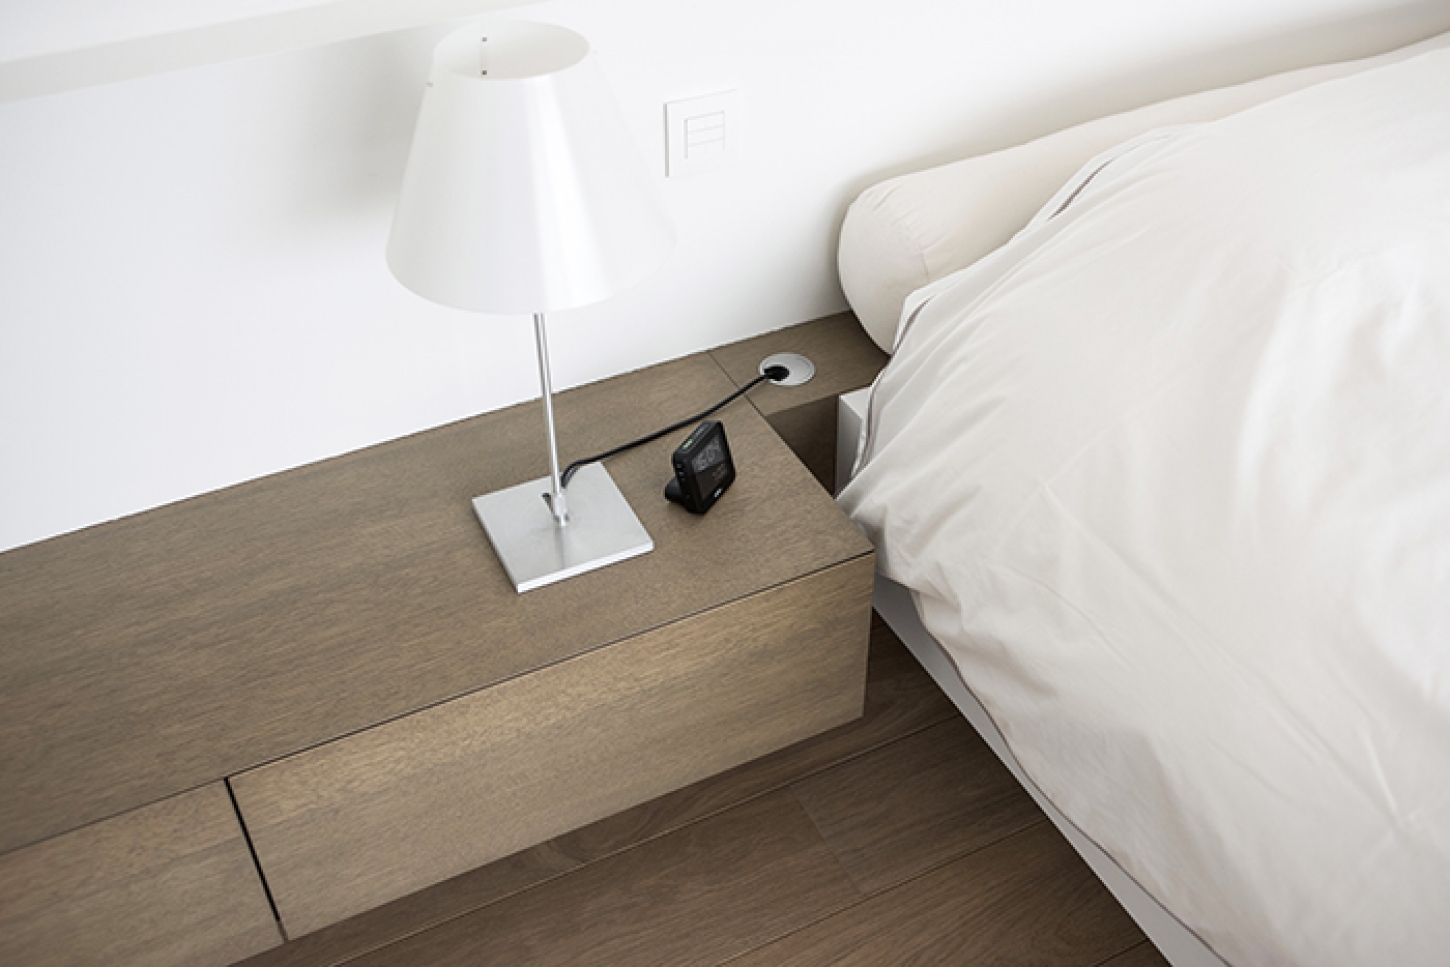 Elk element dat in uw slaapkamer aanwezig is, kan uw slaapcomfort verbeteren of net verstoren.